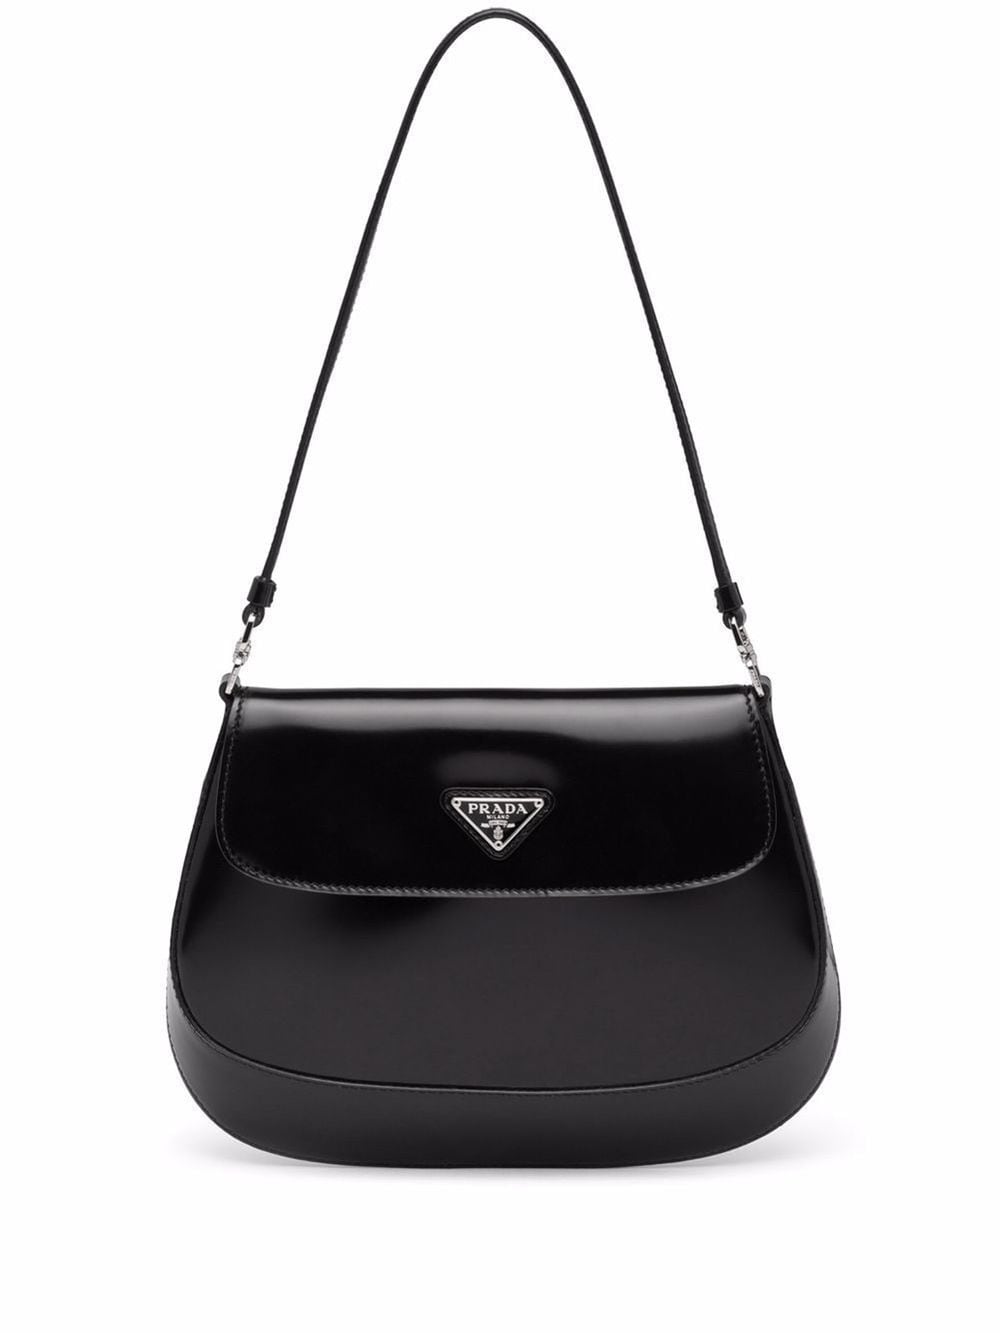 Cleo shoulder bag | Prada | Eraldo.com